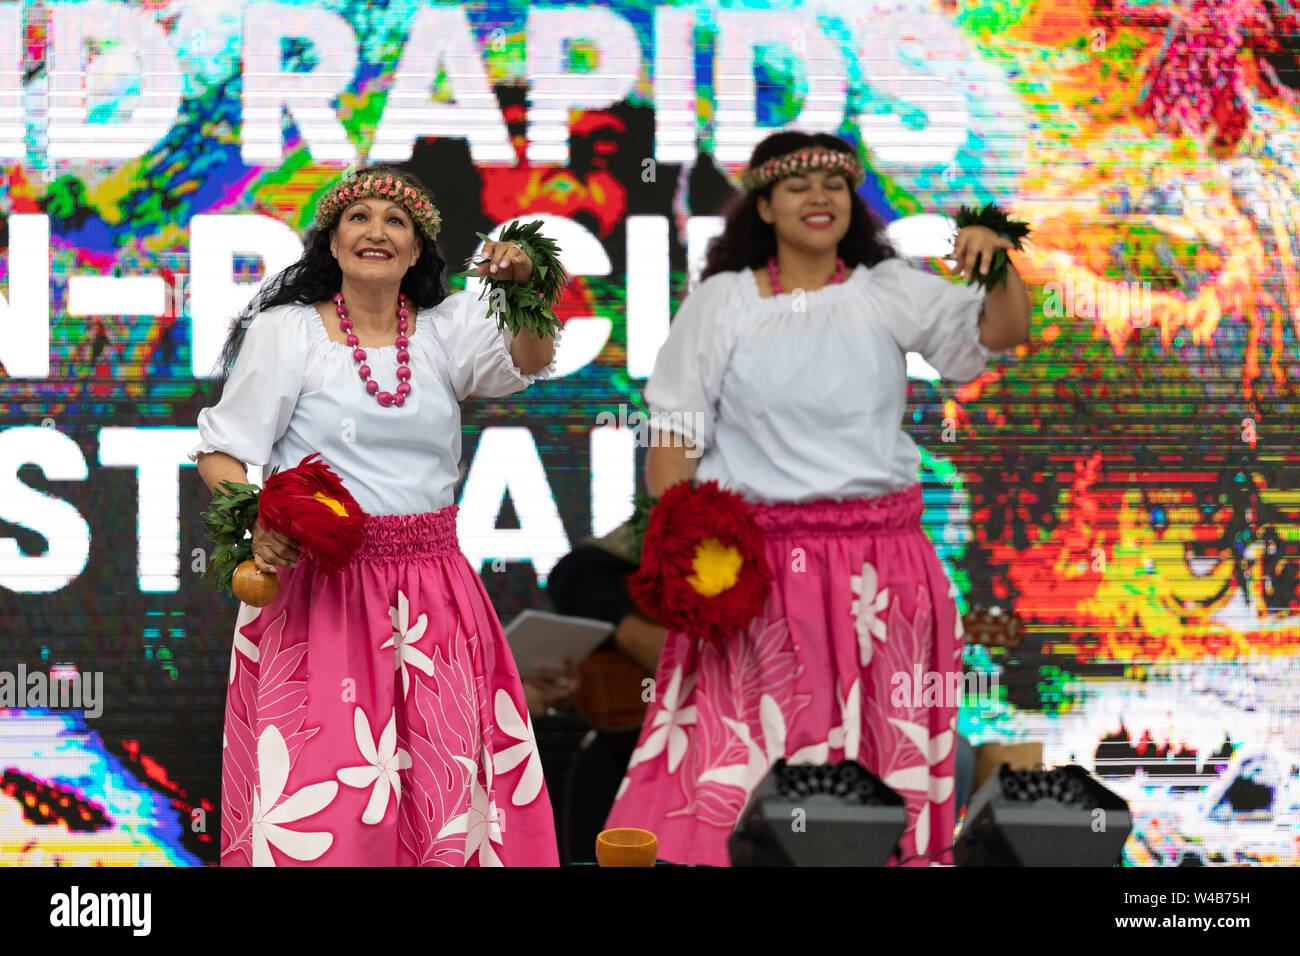 Grand Rapids, Michigan, USA - 15 juin 2019 : Festival du Pacifique Asiatique, Femme portant des vêtements traditionnels d'effectuer une danse hula du Rosa Parks Circ Banque D'Images